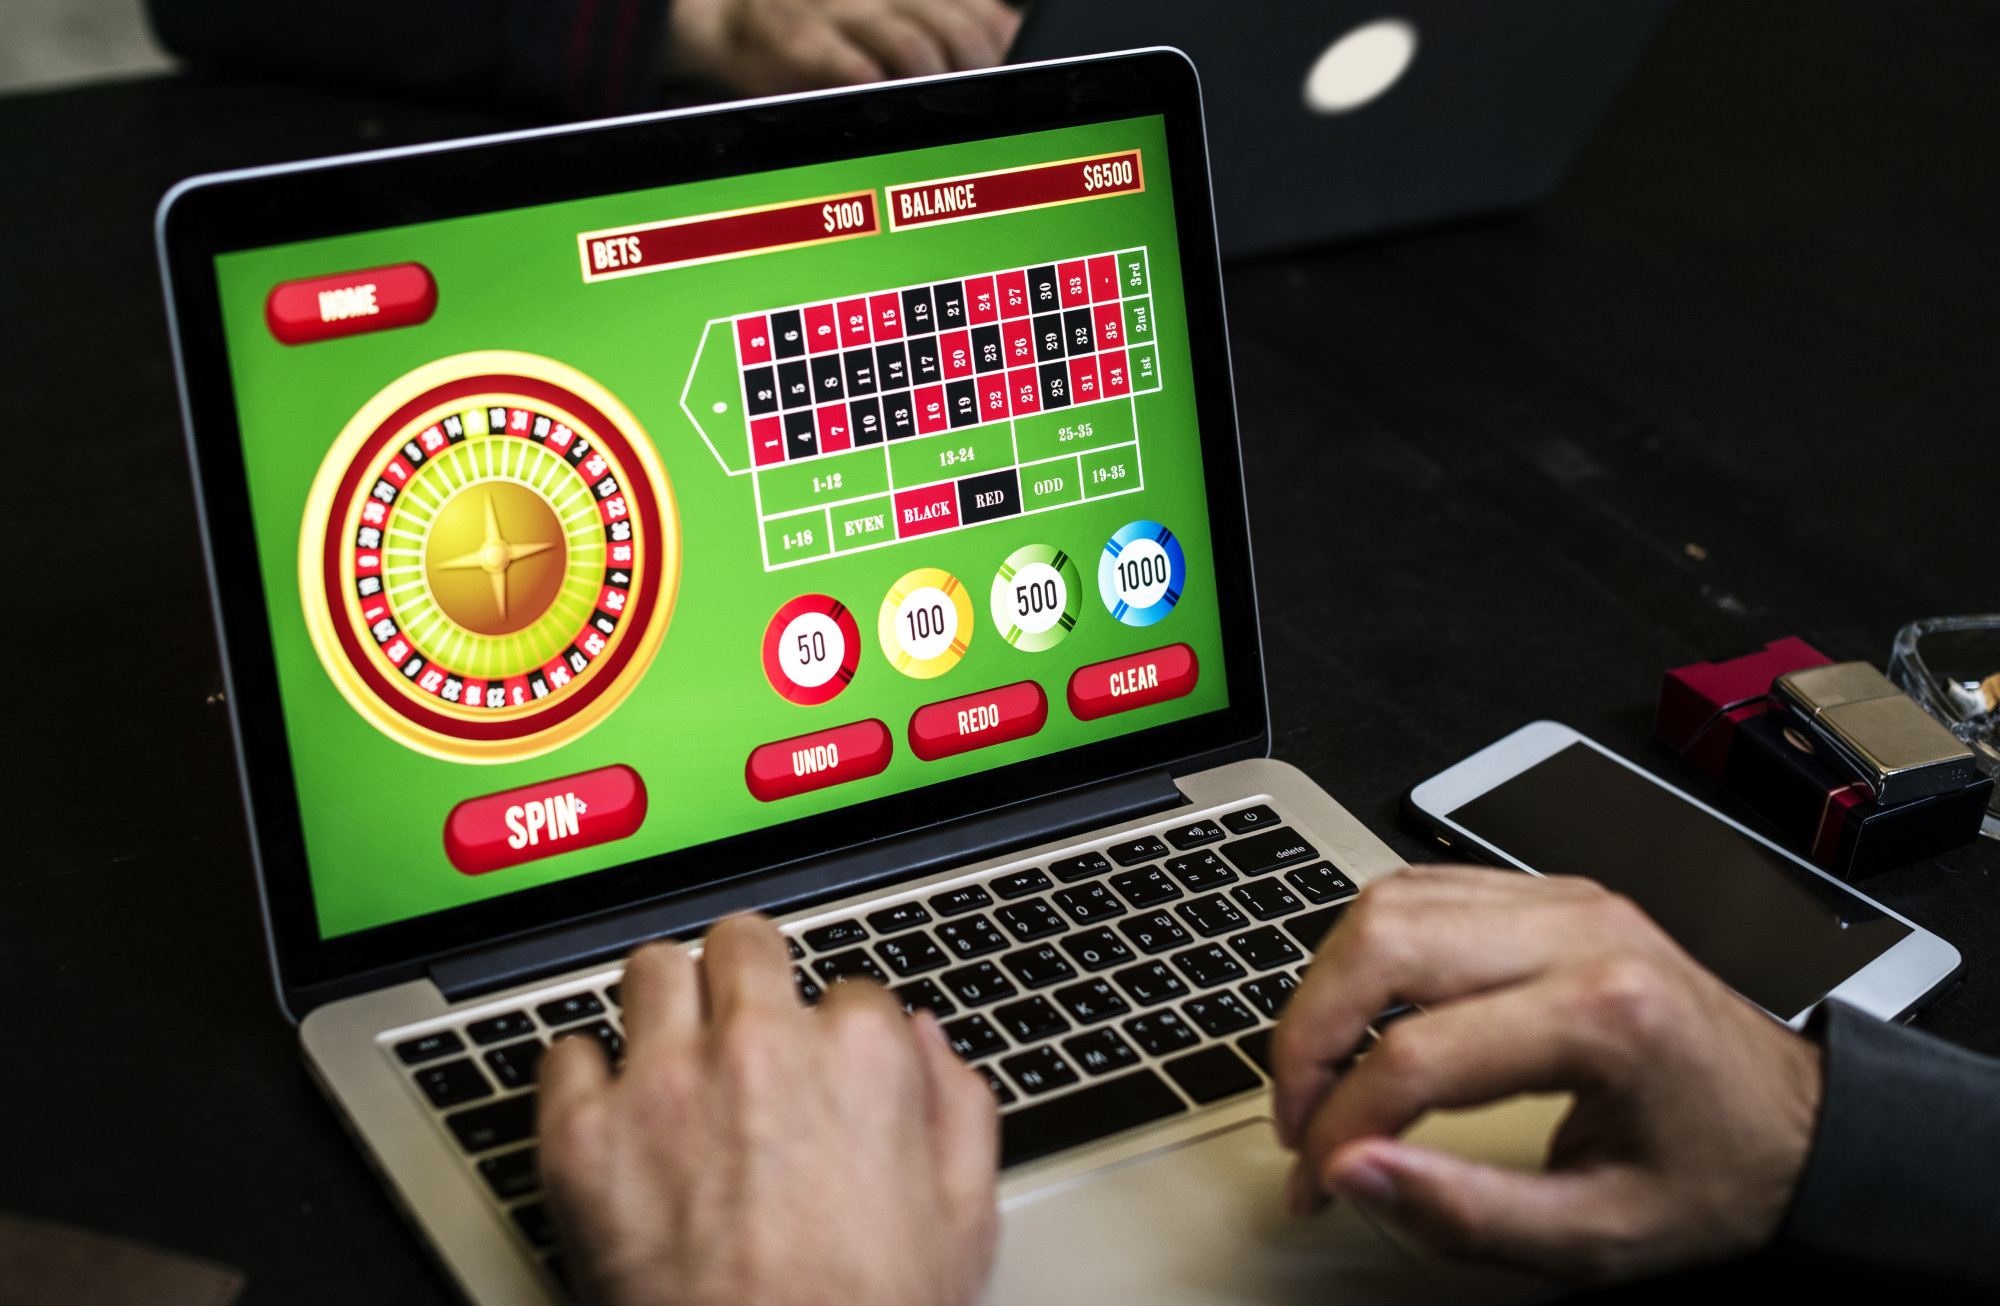 online gambling site on laptop